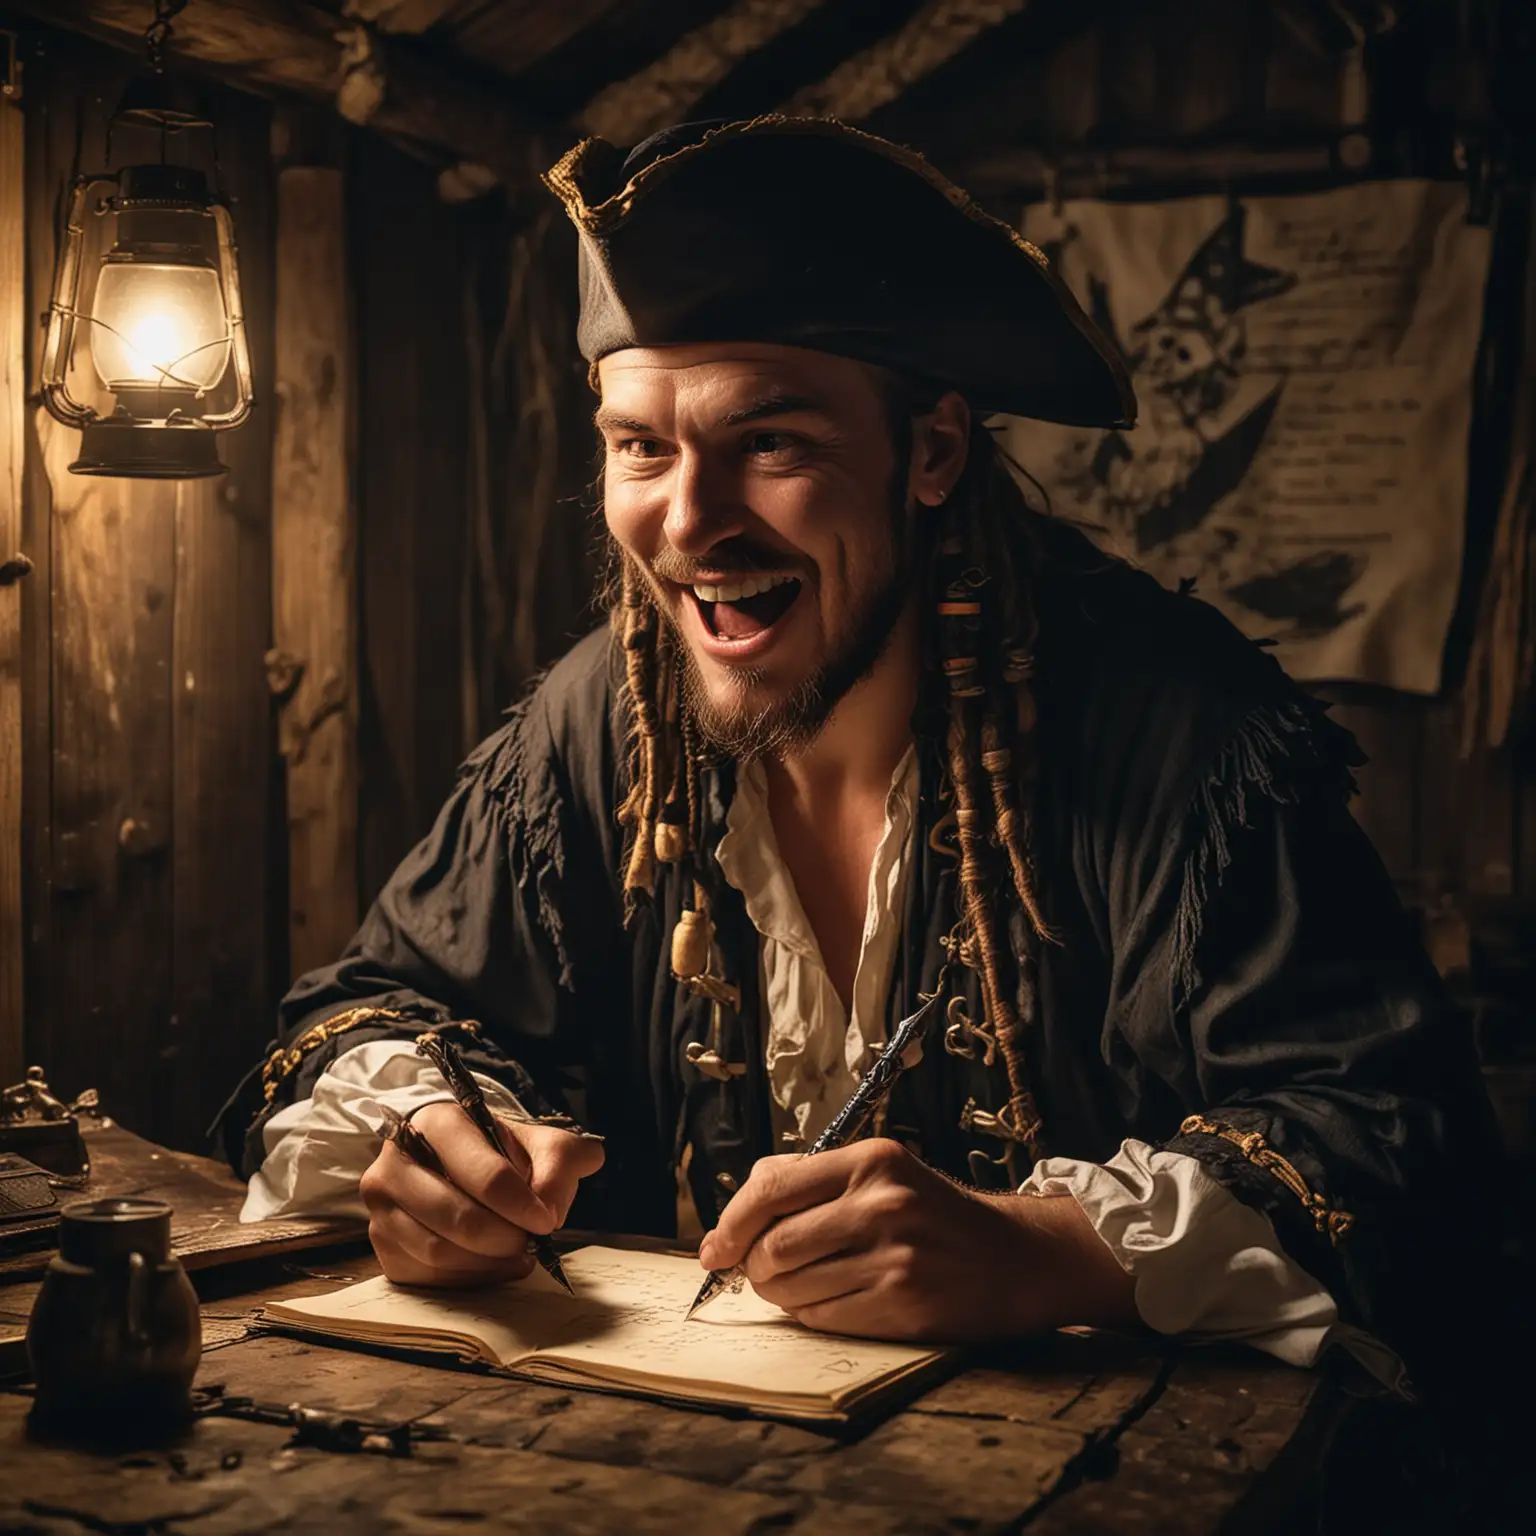 Ein Pirat sitzt in der Kajüte und schreibt mit einer Feder etwas ins Lockbuch. Dunkel. Laterne. Der Pirat lacht sehr laut. Der Pirat schreibt mit Federkiel. Der Pirat schaut zur Kamera und lacht mit offenem Mund.